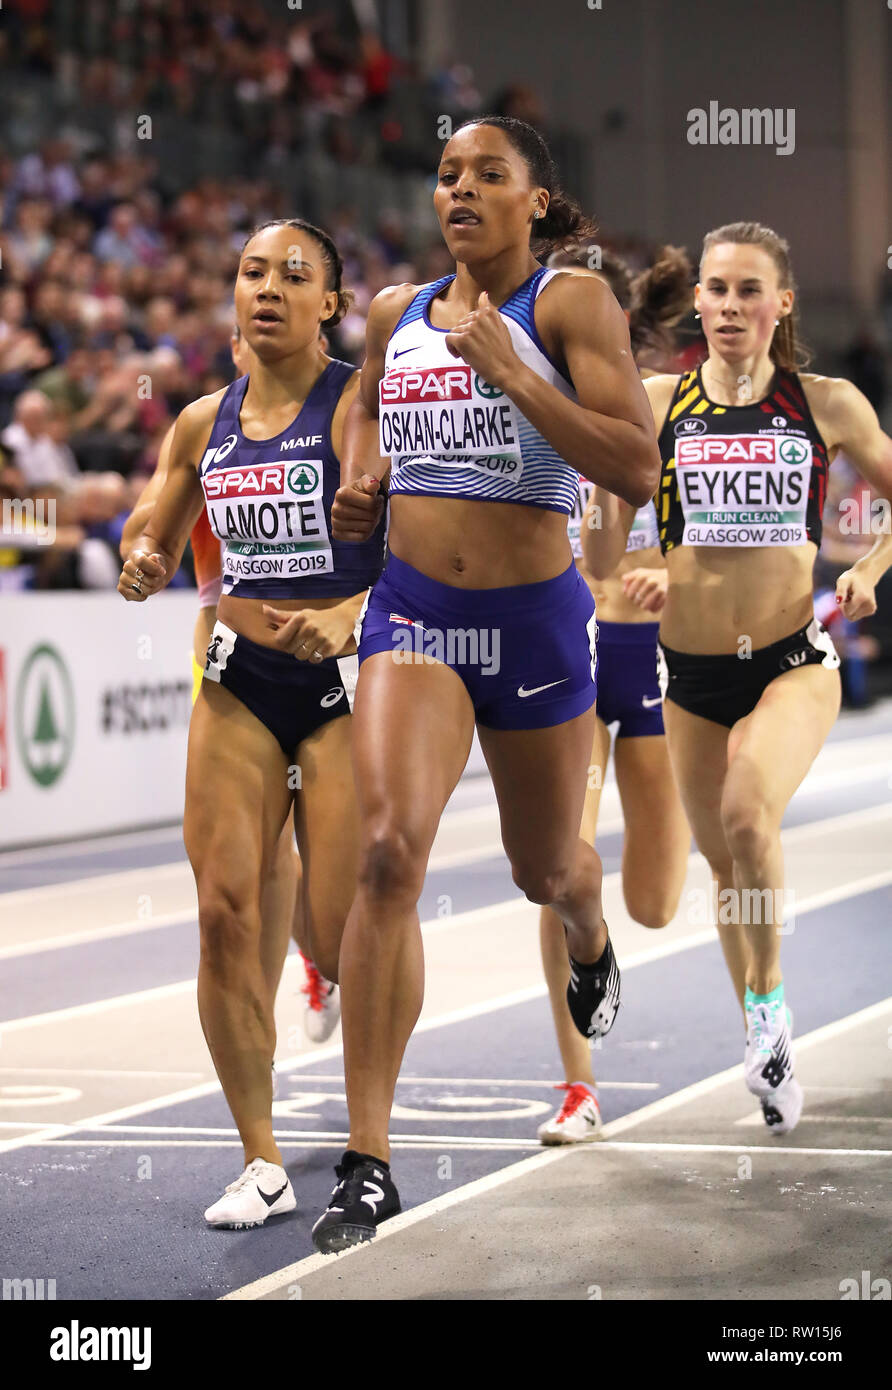 Shelayna Oskan-Clarke la Grande-Bretagne mène la course pendant la finale du 800 m femmes lors de la troisième journée de l'Indoor d'athlétisme à l'Emirates Arena, Glasgow. Banque D'Images